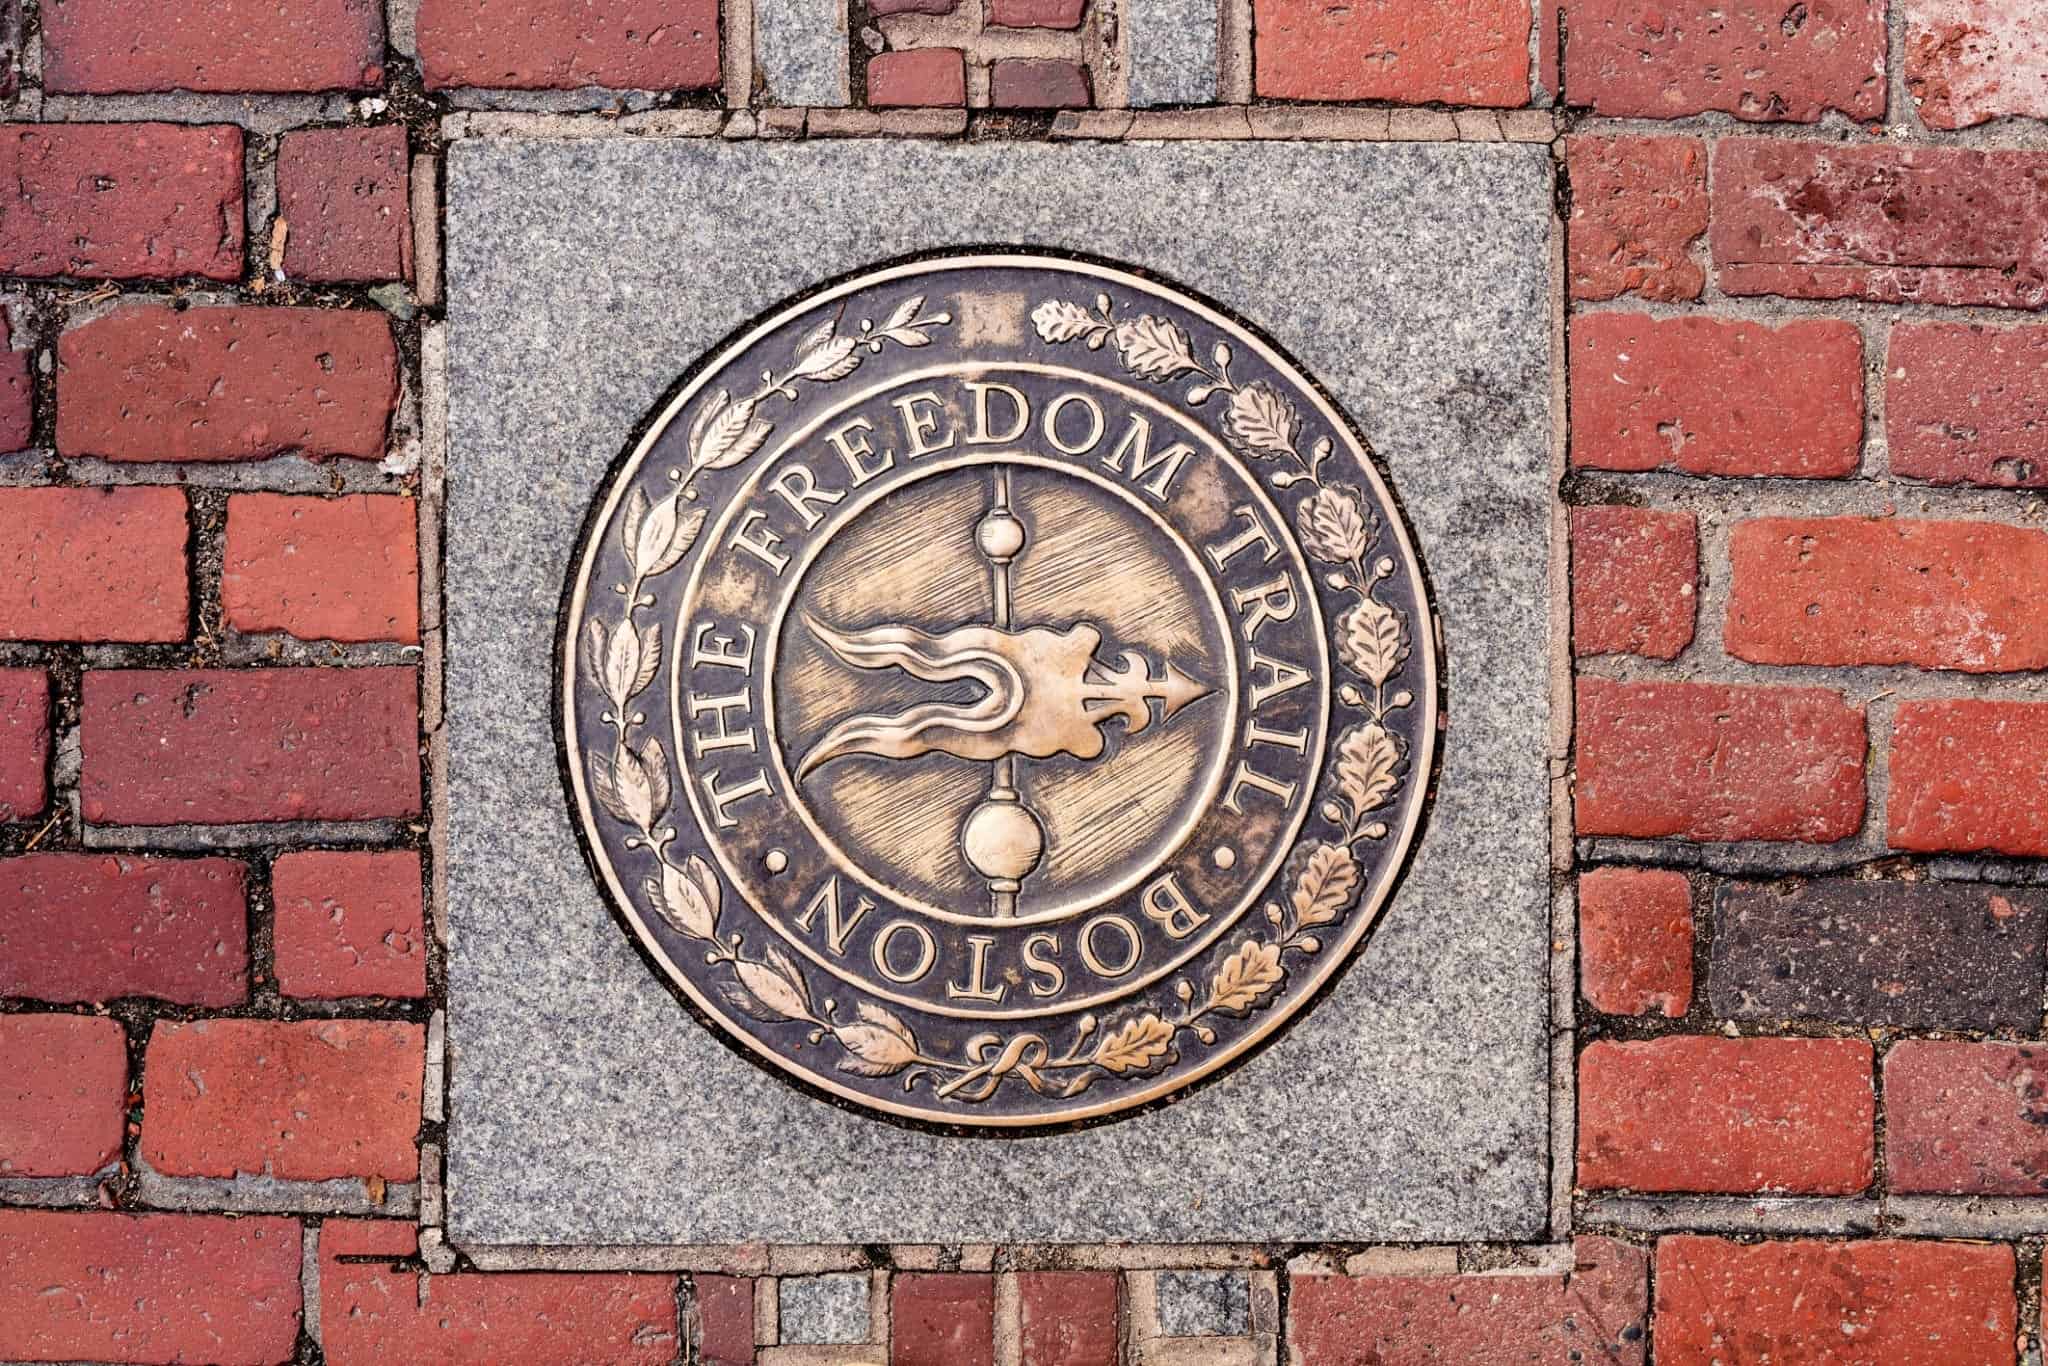 The Freedom Trail Boston, Massachusetts